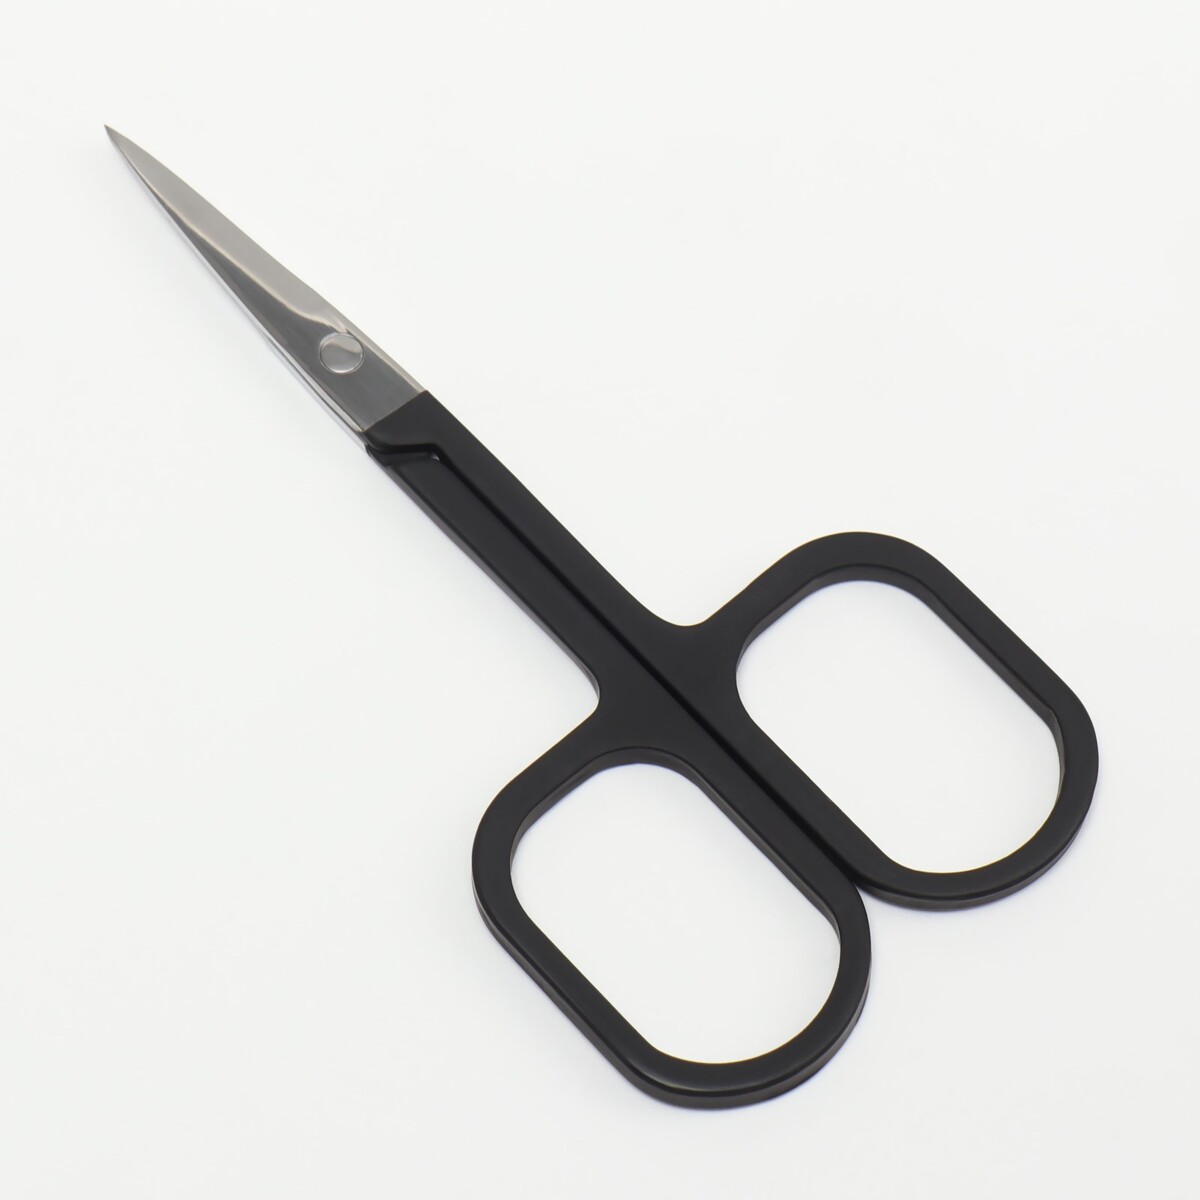 Ножницы маникюрные, узкие, прямые, с прорезиненными ручками, 9 см, цвет серебристый/черный ножницы для детского маникюра ладушки мультидом трейдинг vl90 136